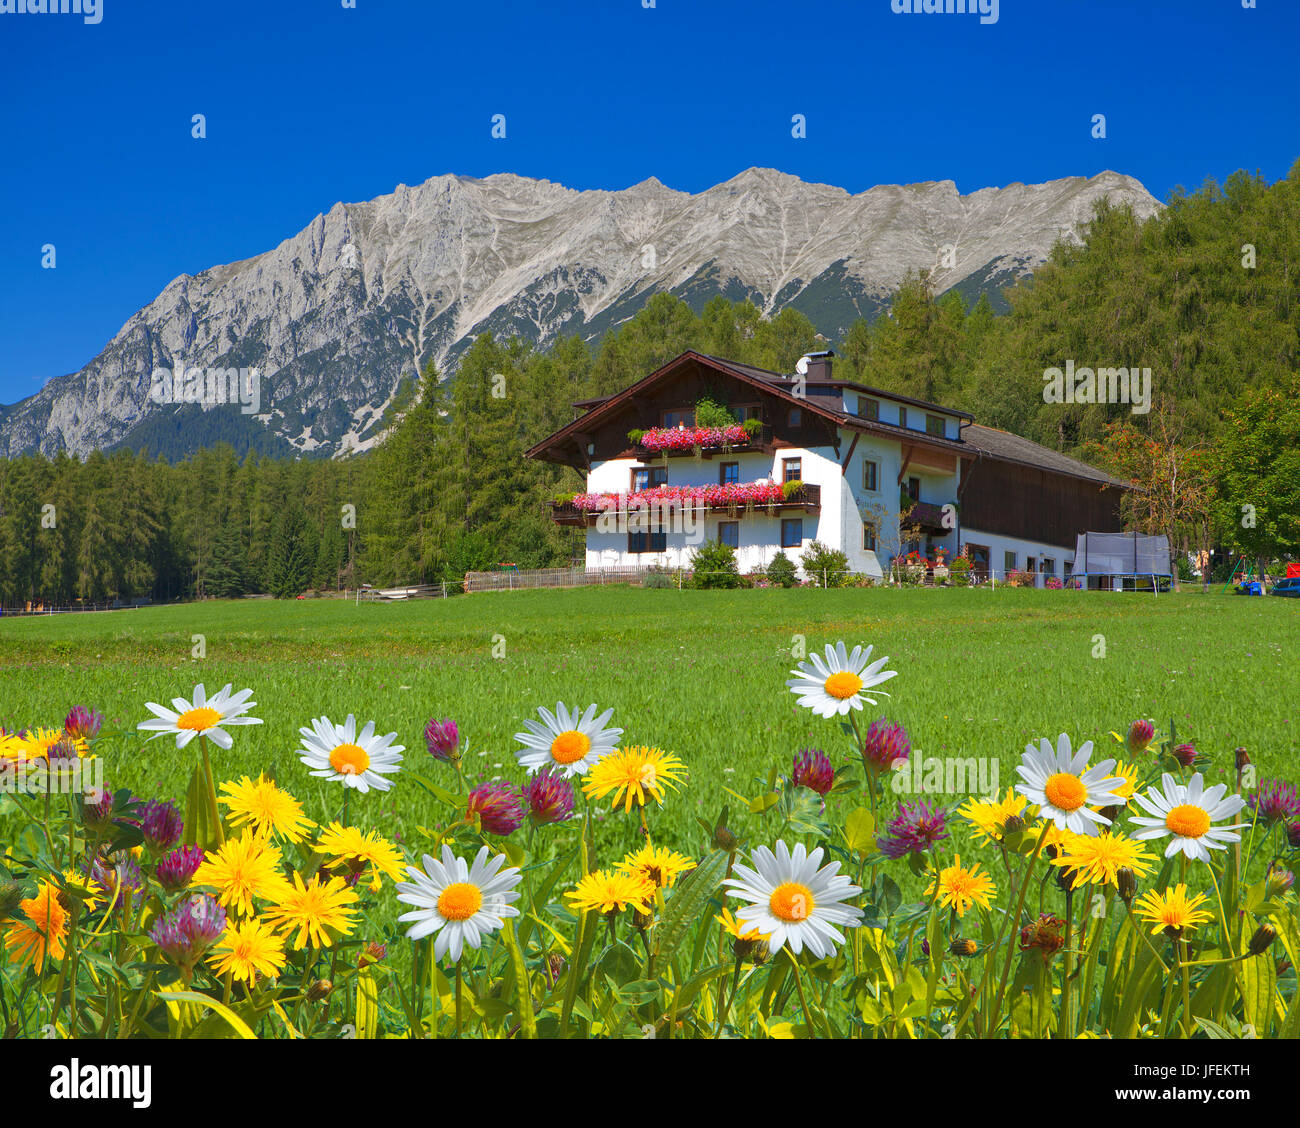 Austria, Tyrol, Obsteig, farm with Wannig (M) Stock Photo